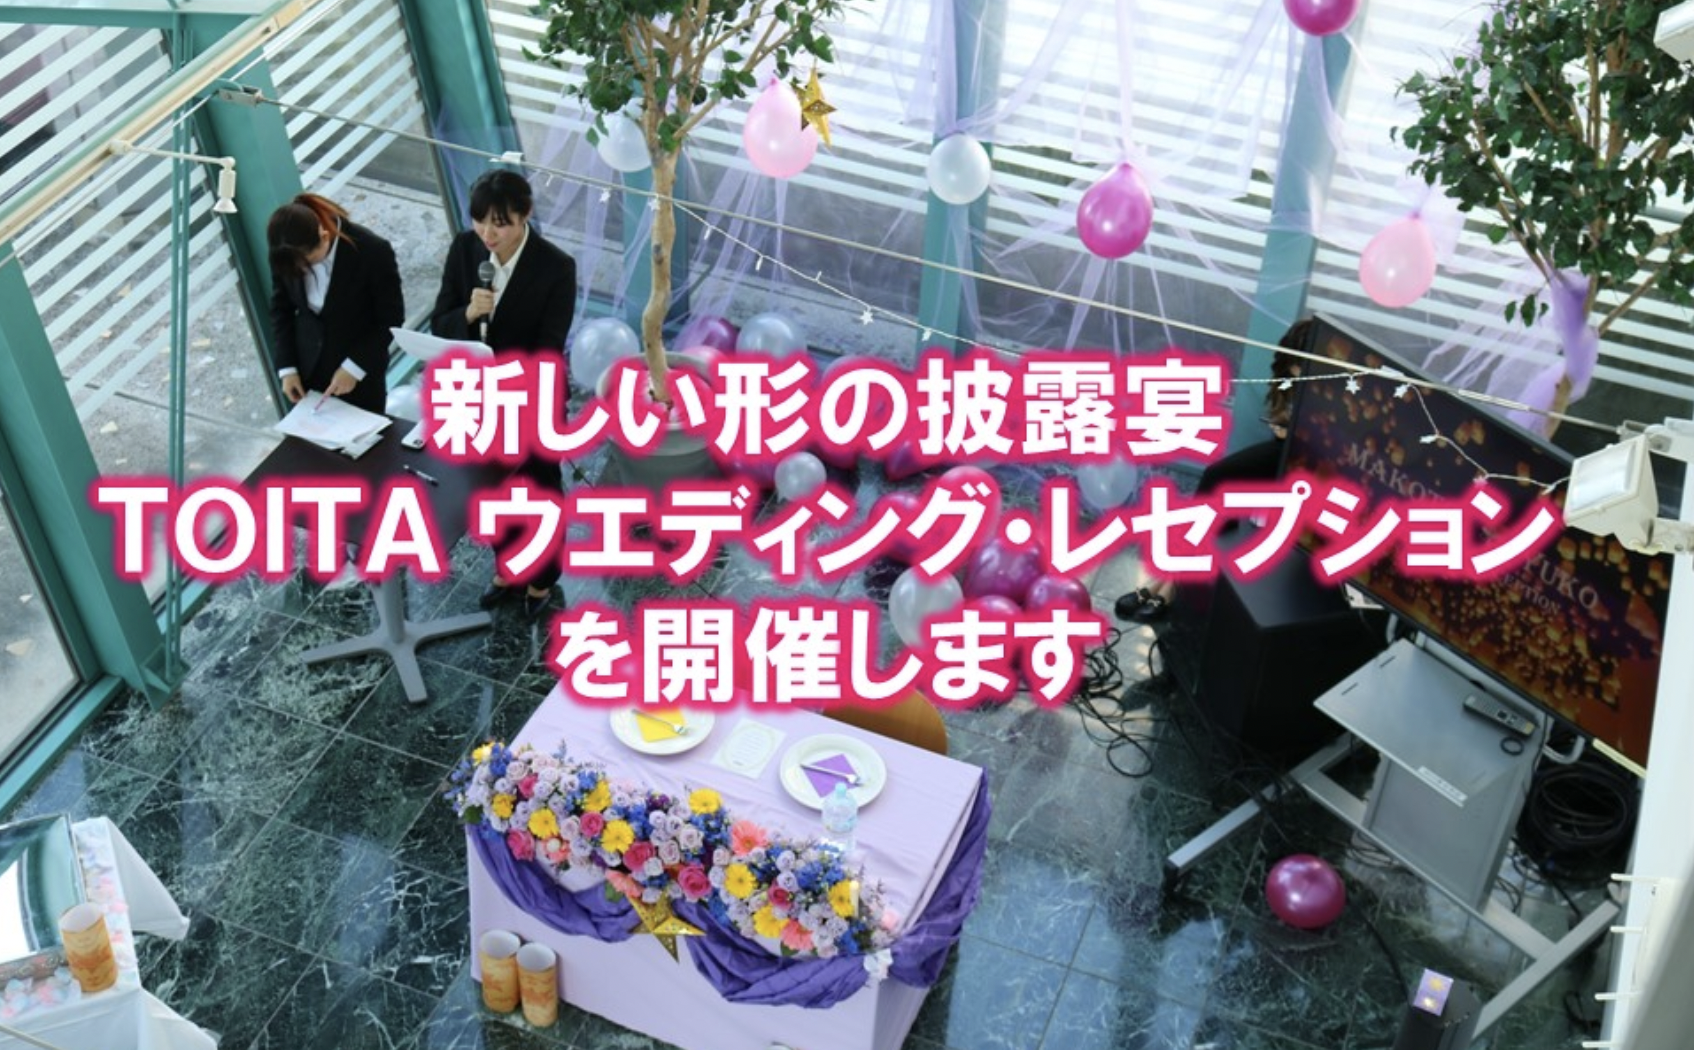 模擬披露宴「TOITA ウエディング・レセプション」を開催します。